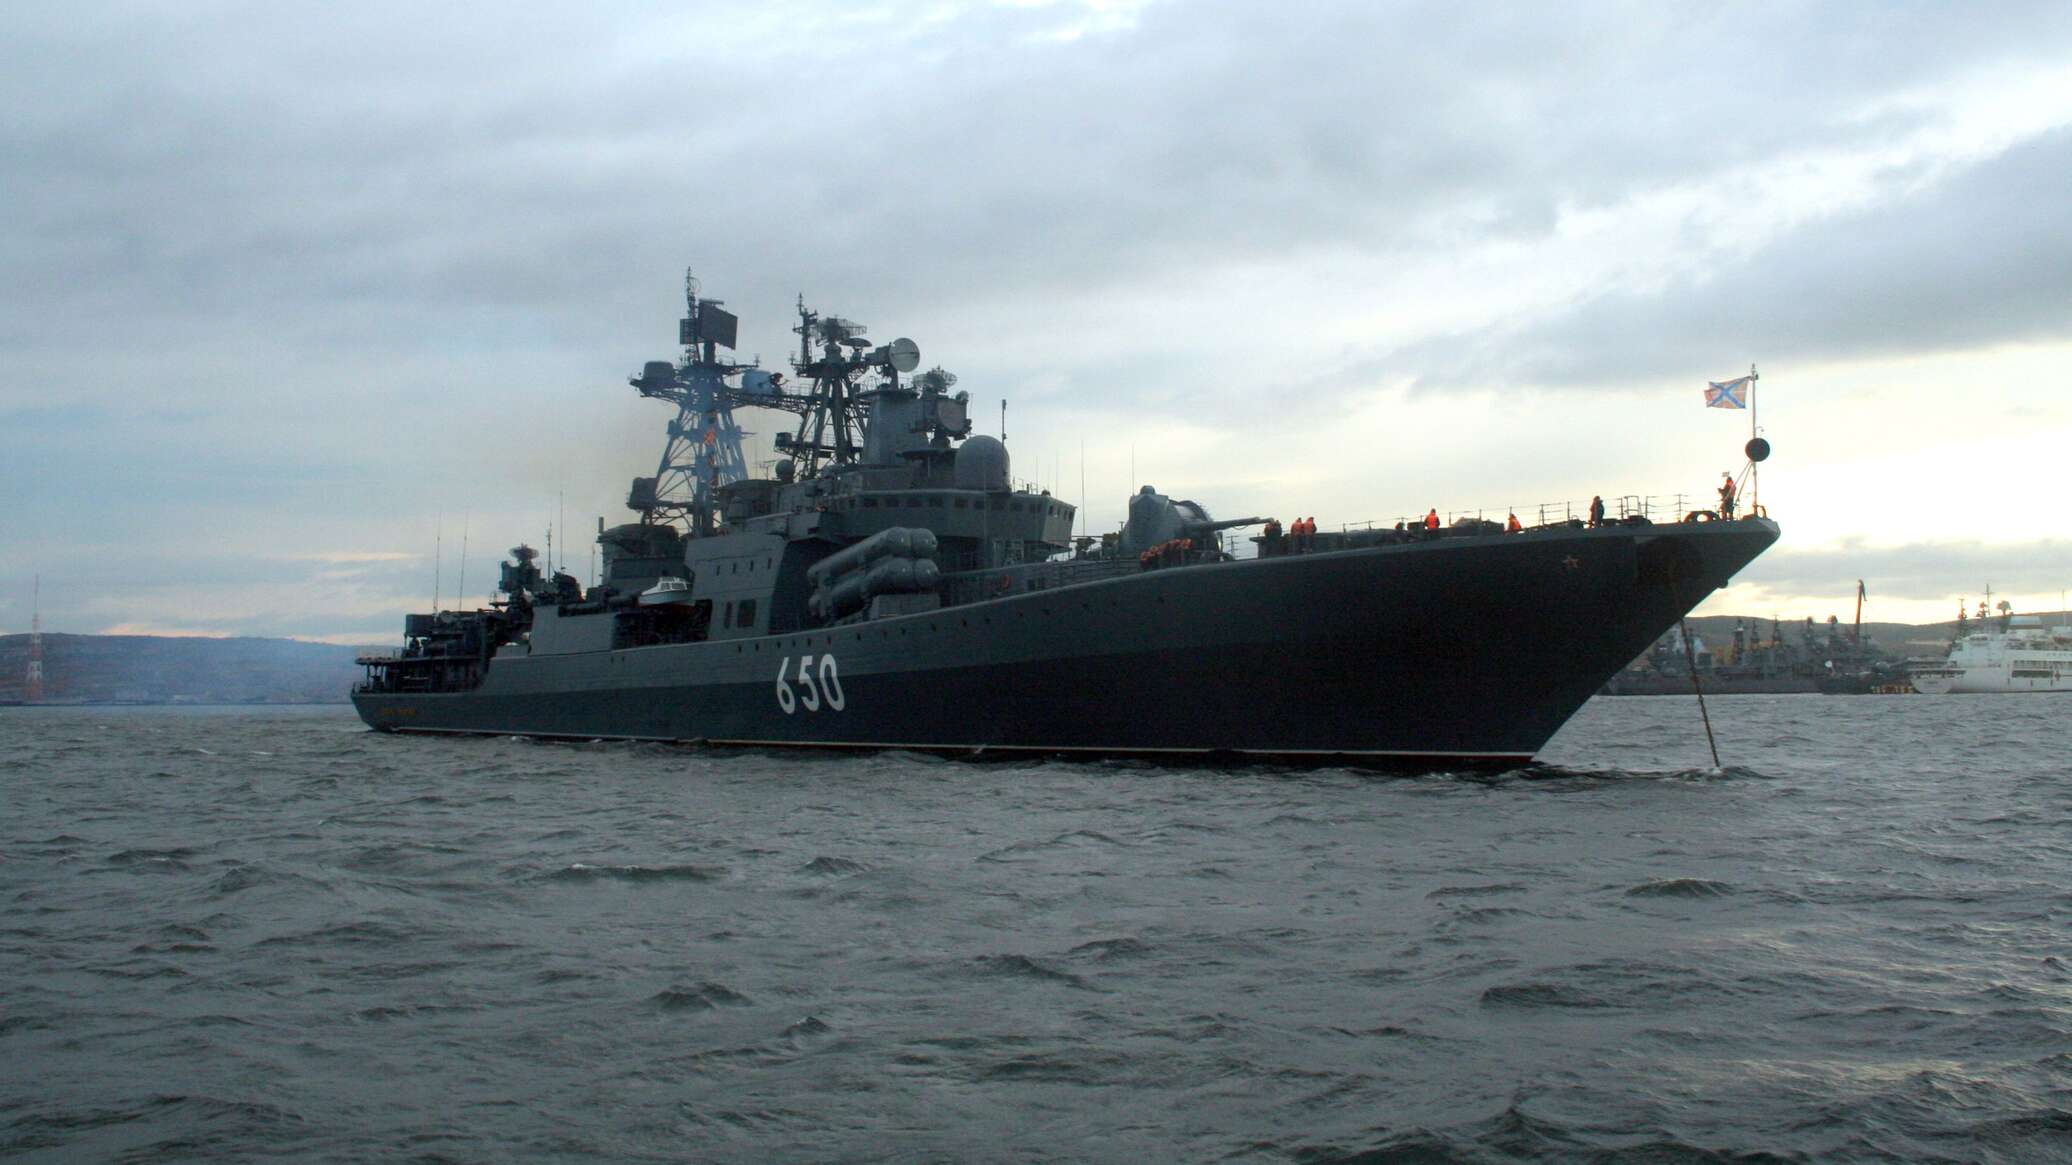 سفينة "الأميرال بانتيلييف" المضادة للغواصات تصد هجوما جويا فوق بحر اليابان في محاكاة تدريبية